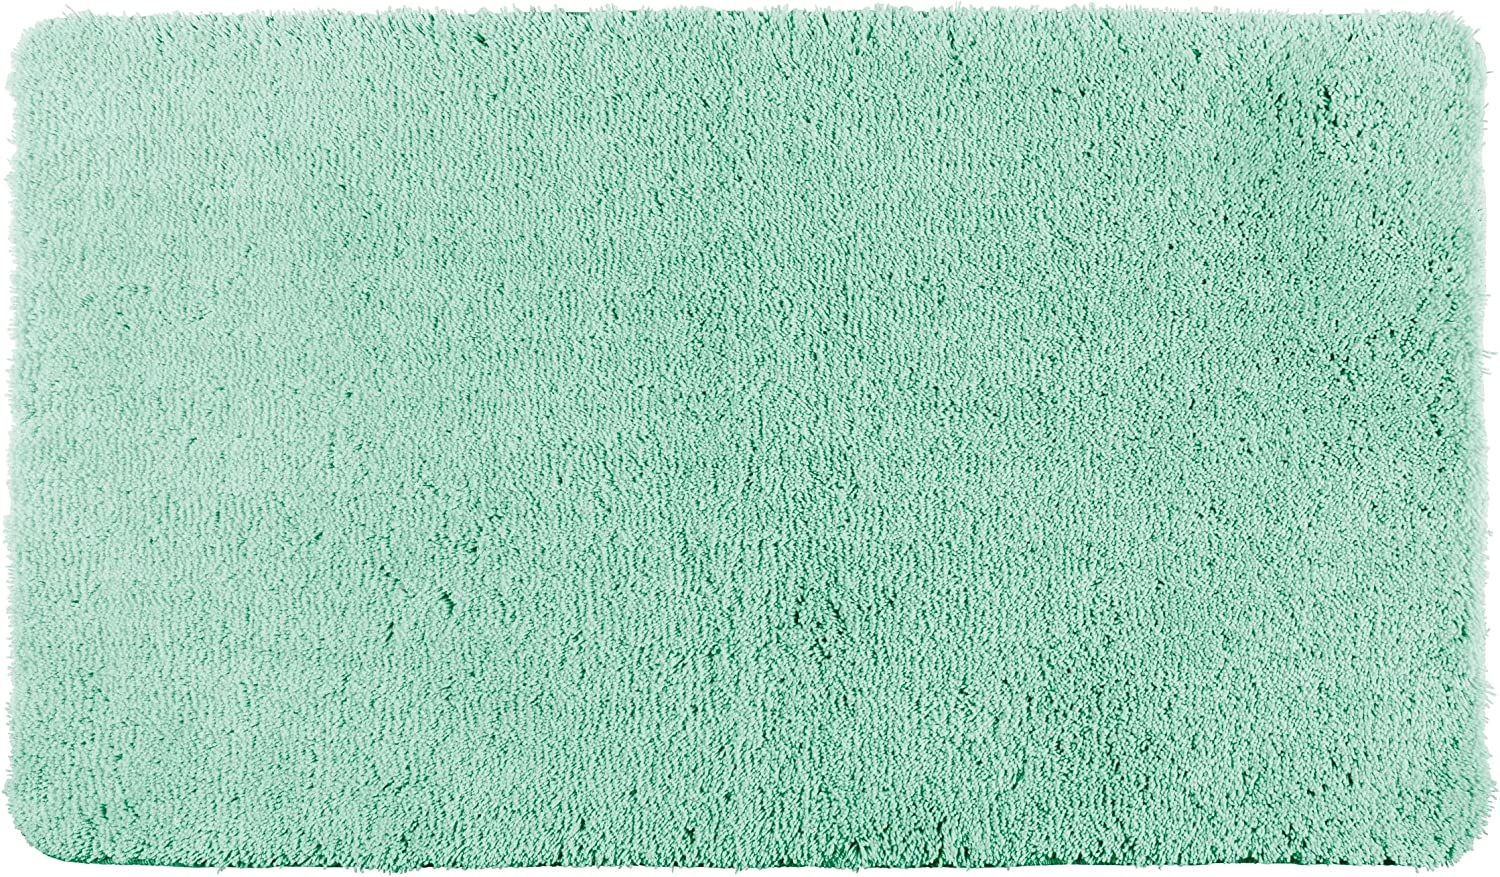 Badteppich Belize Turquoise, 60 x 90 cm - Badematte, sicher, flauschig, fusselfrei, Polyester, 60 x 90 cm, Türkis